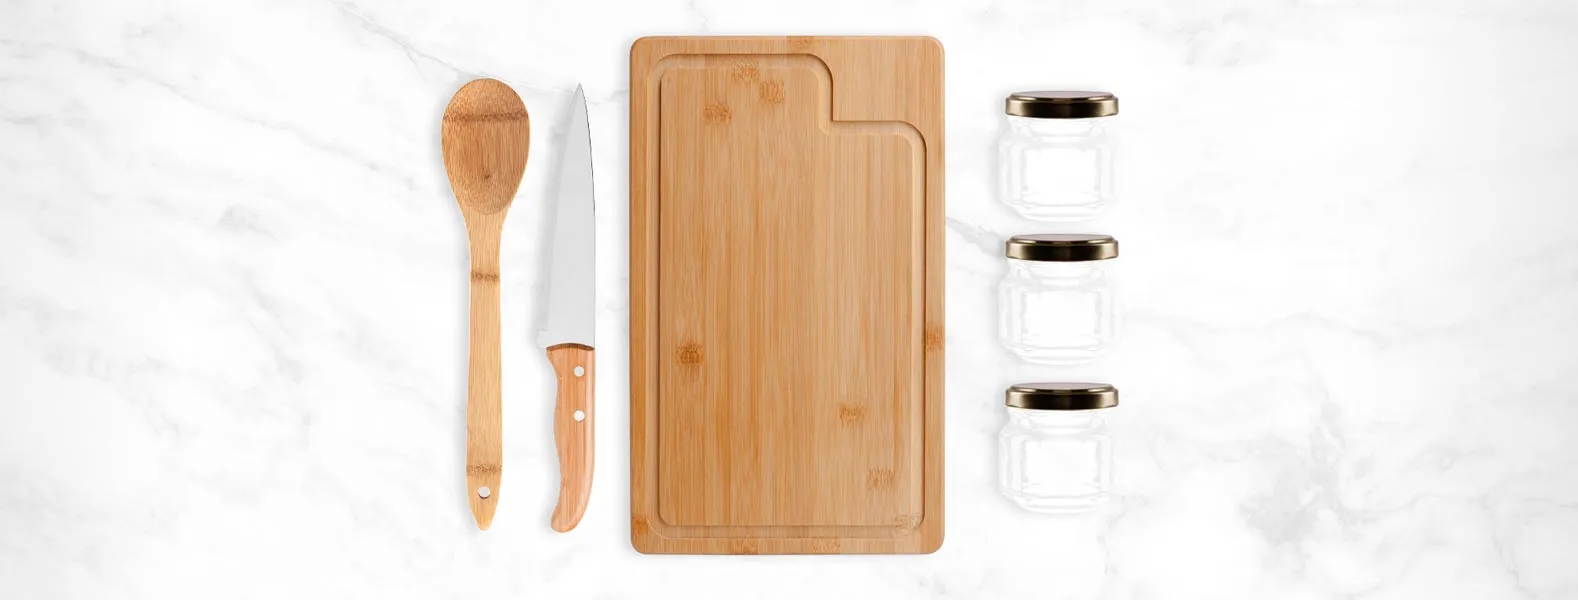 Kit para cozinha e tempero. Conjunto composto por uma tábua e colher 30 cm em bambu; Uma faca 7” em aço inox/bambu e 3 potinhos de vidro com tampa.